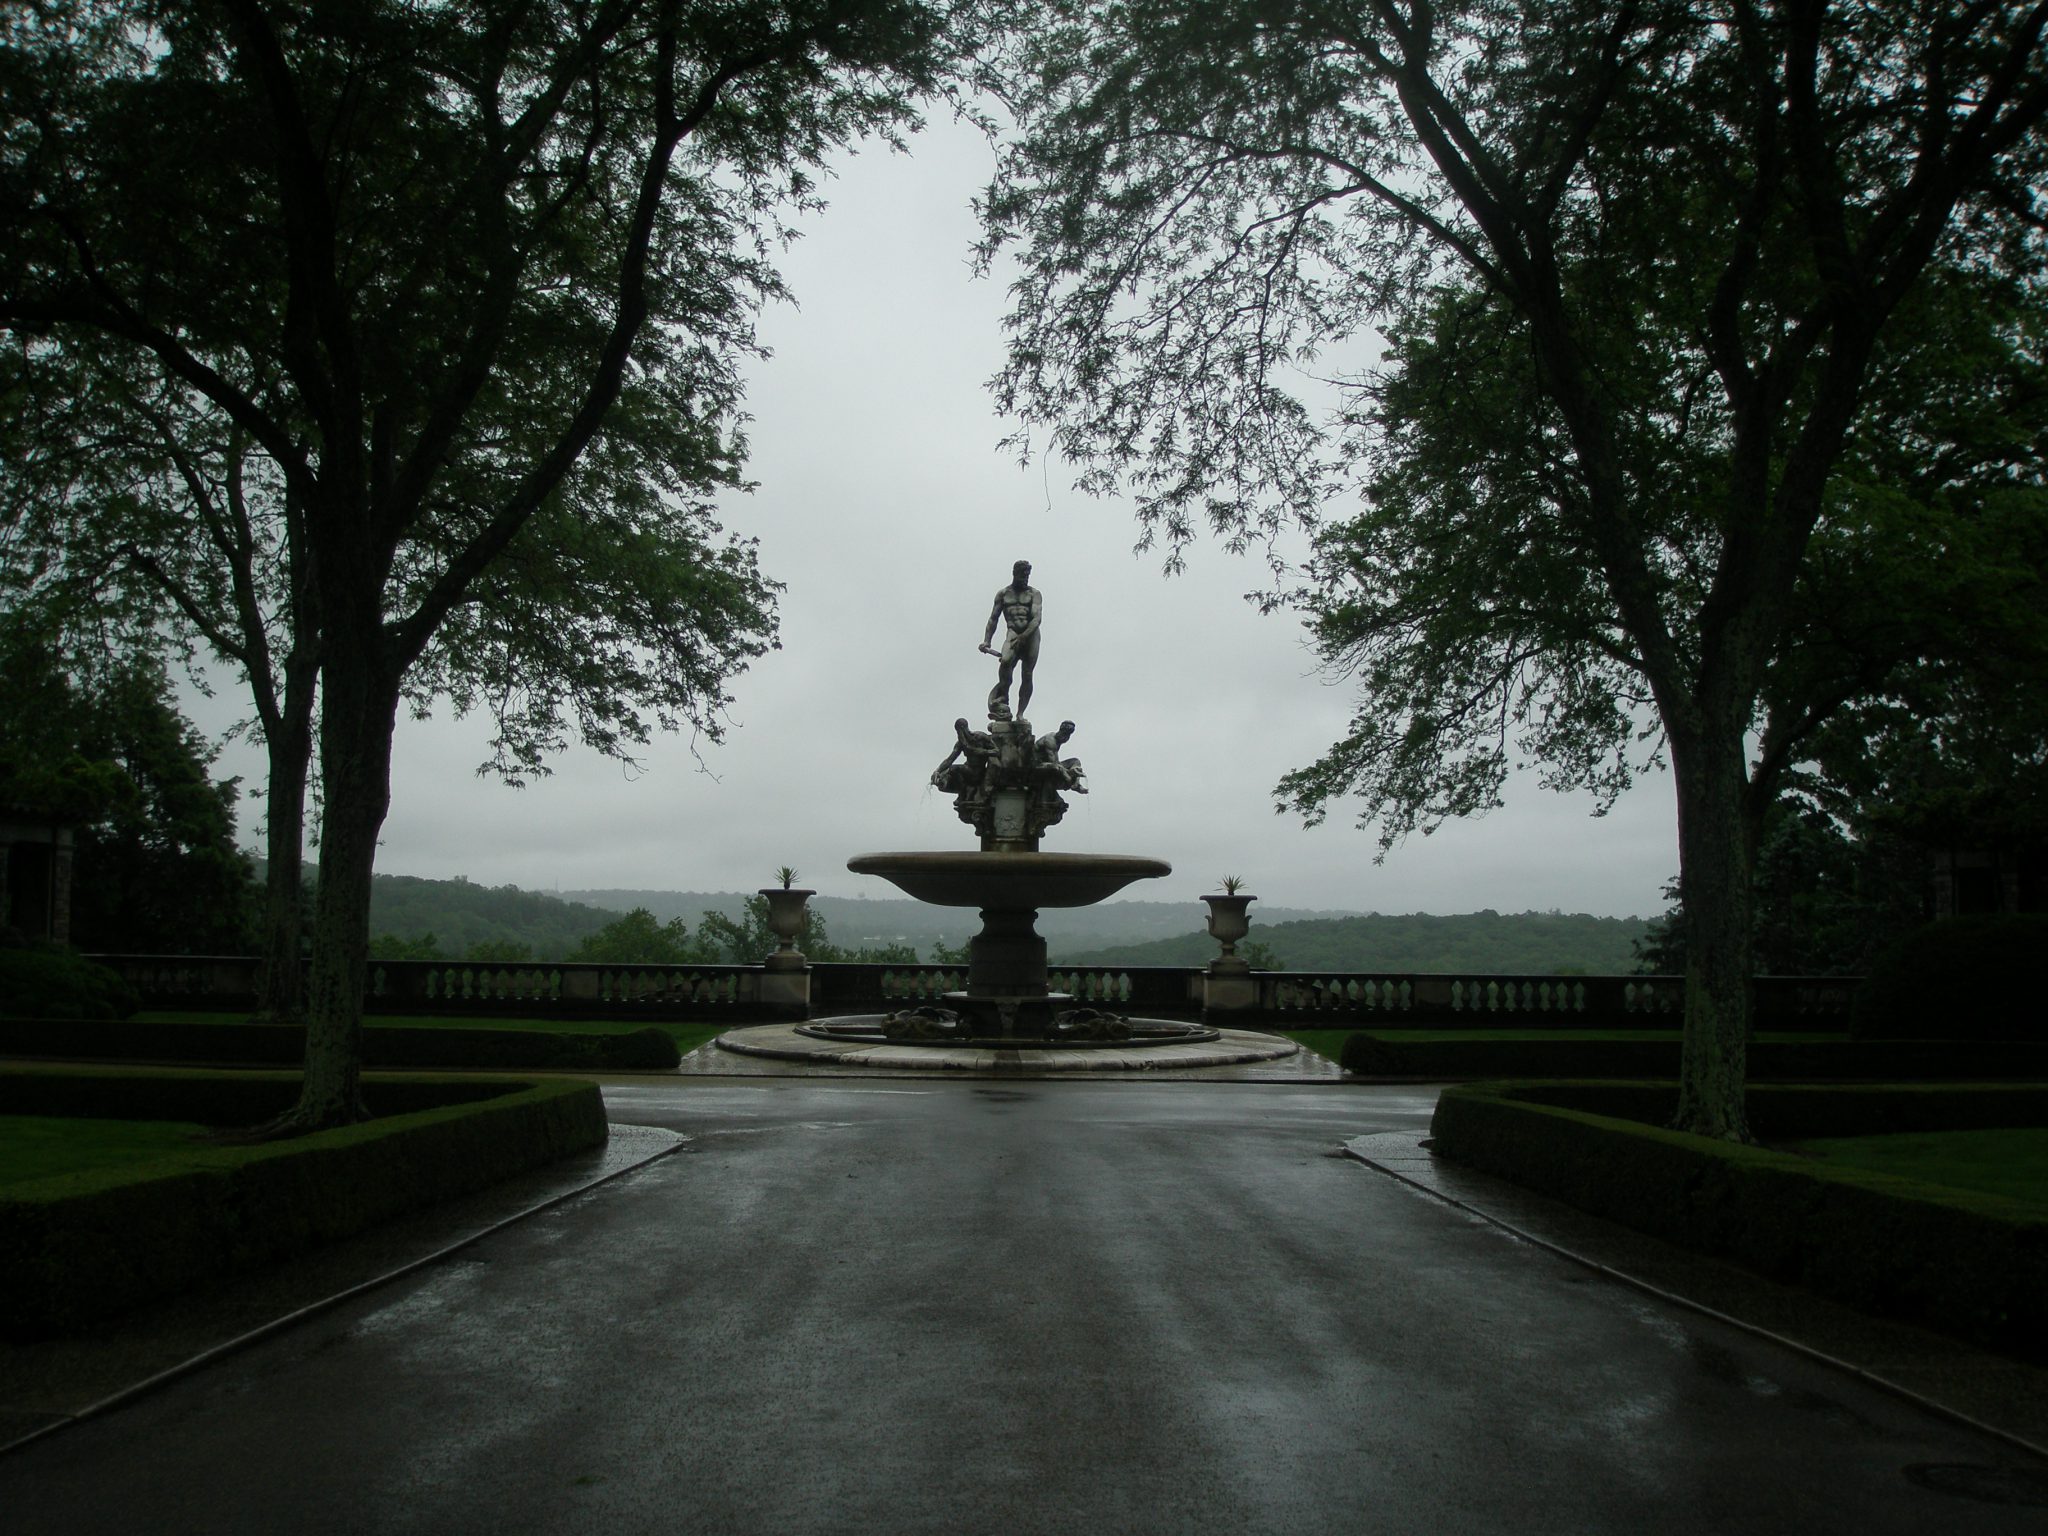 The Kykuit Oceanus Fountain, on June 7, 2013